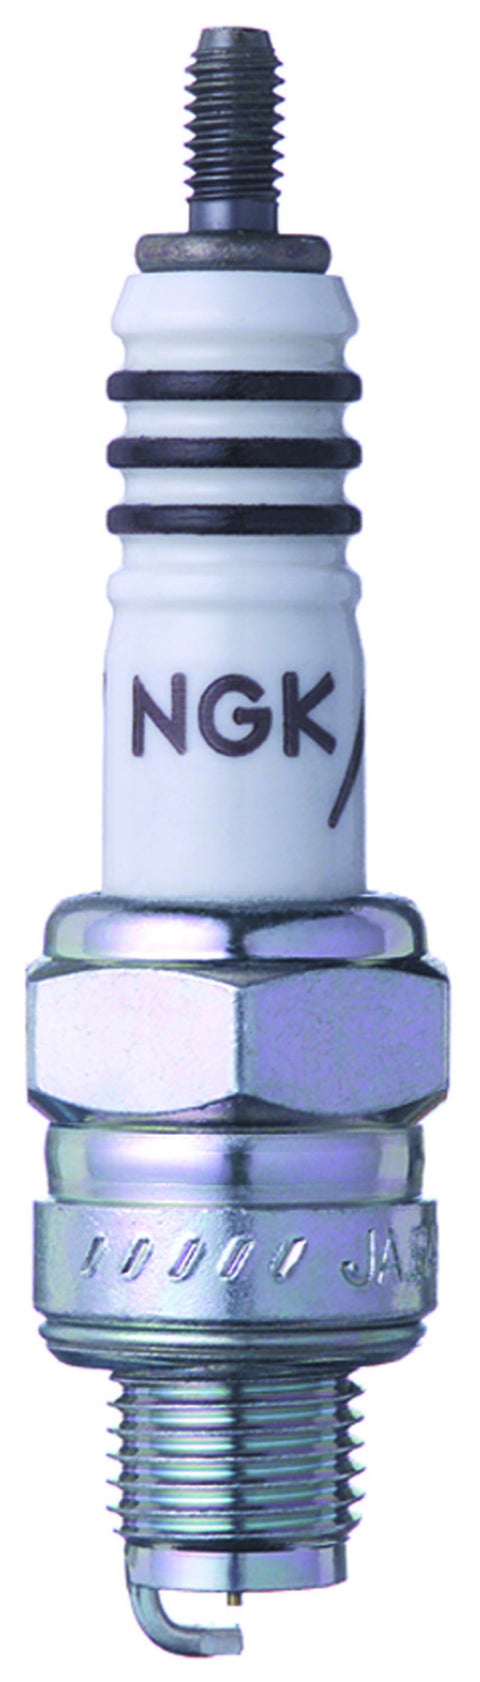 NGK Single Iridium Heat Range 7 Spark Plug (7544-1)